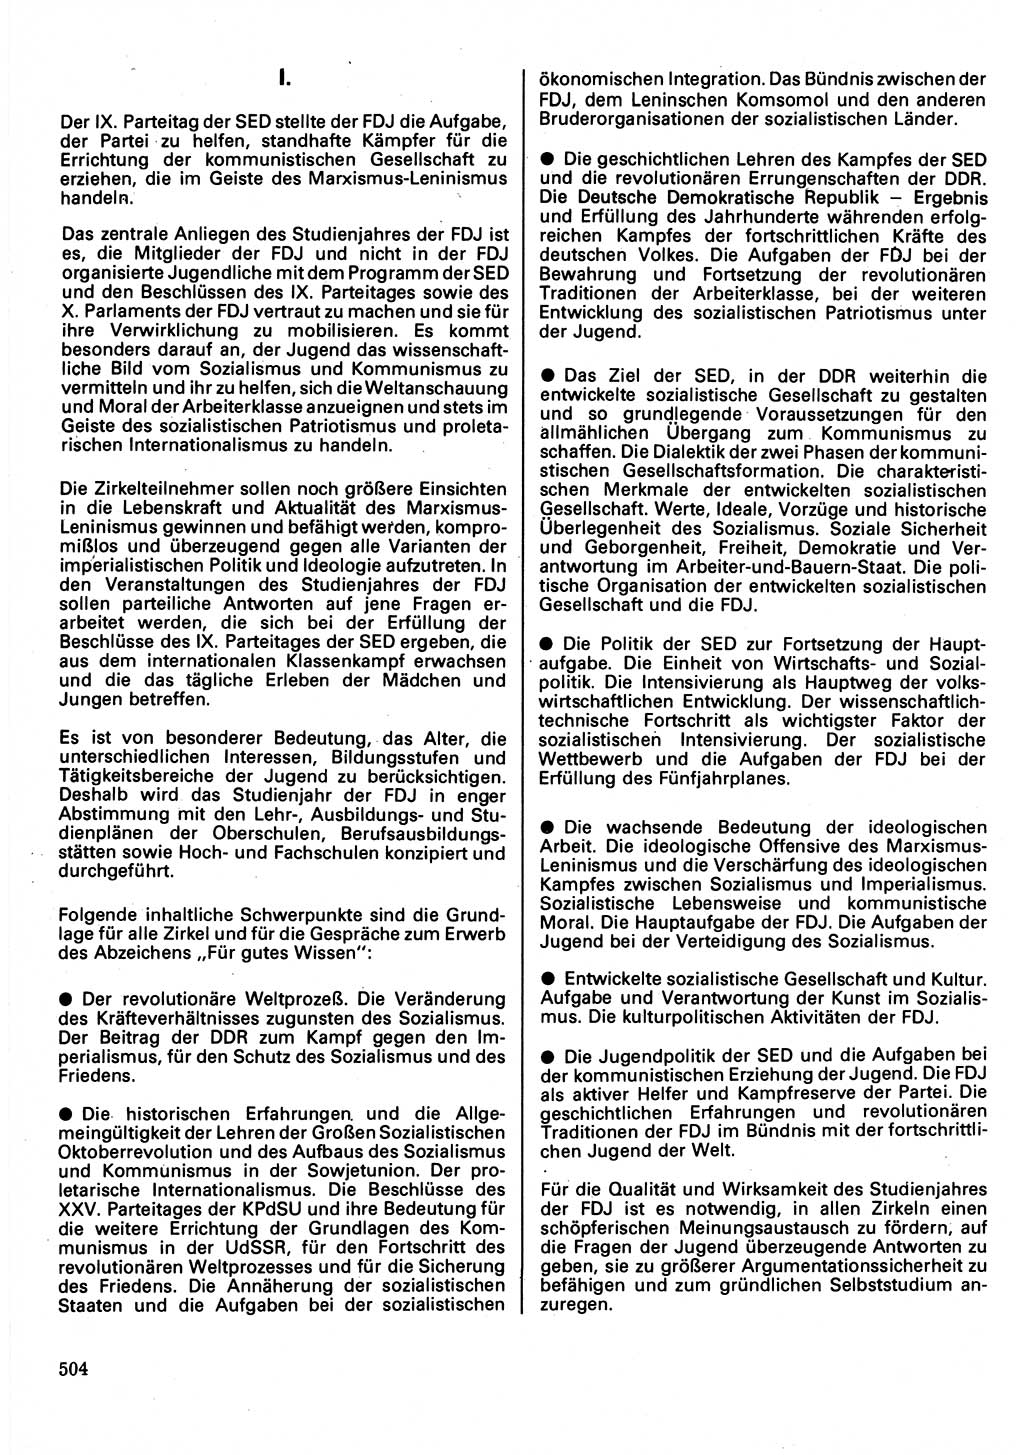 Neuer Weg (NW), Organ des Zentralkomitees (ZK) der SED (Sozialistische Einheitspartei Deutschlands) für Fragen des Parteilebens, 32. Jahrgang [Deutsche Demokratische Republik (DDR)] 1977, Seite 504 (NW ZK SED DDR 1977, S. 504)